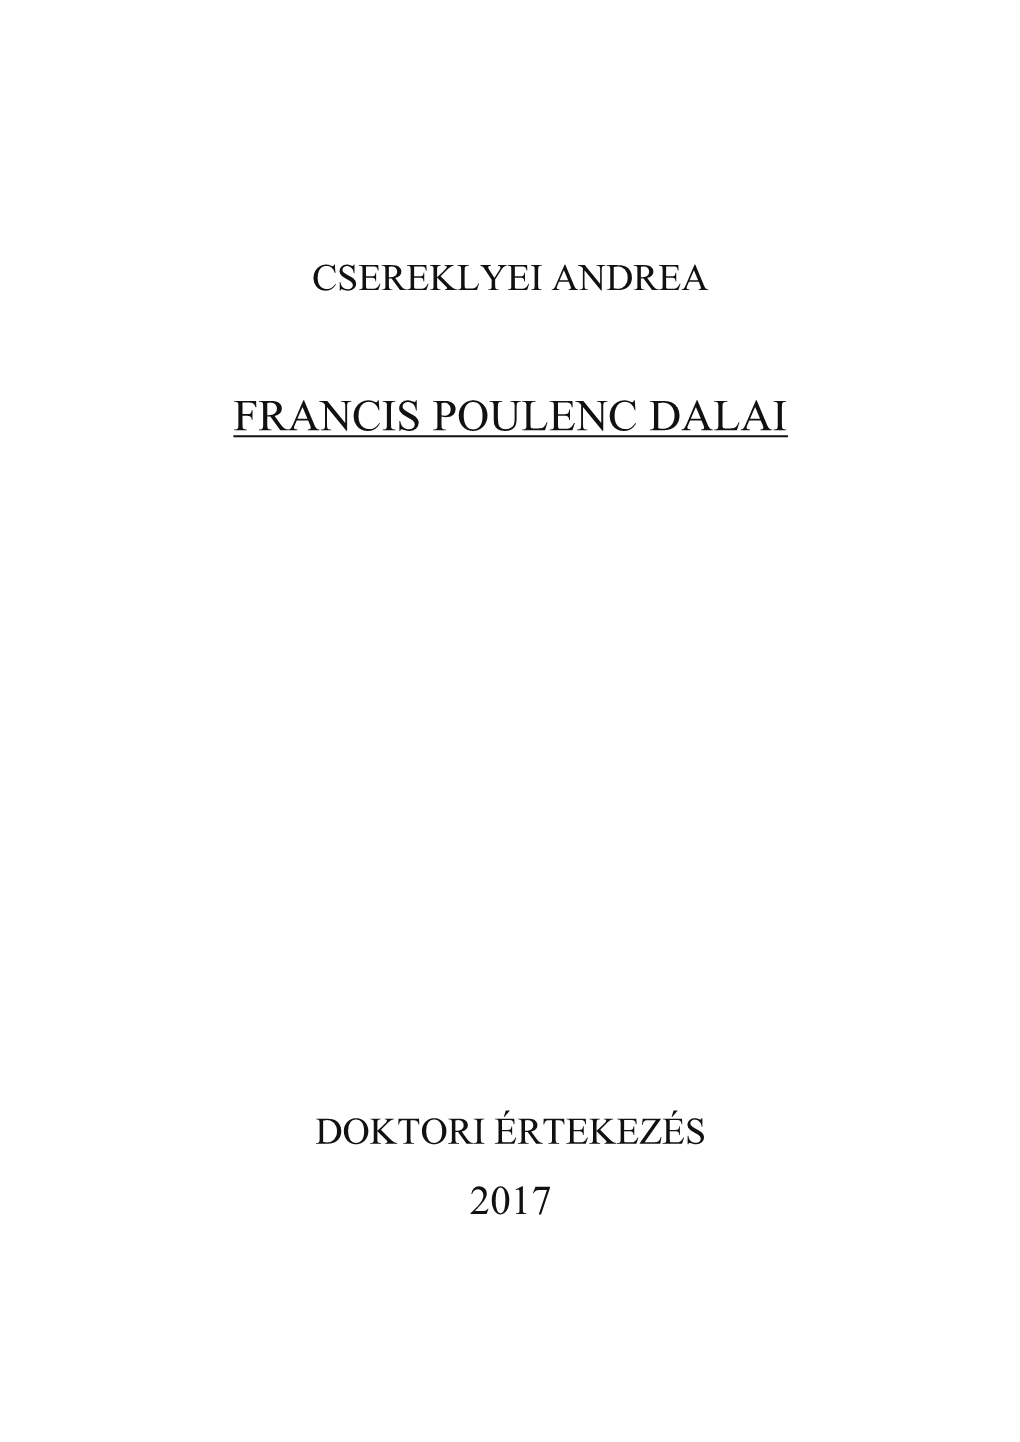 Francis Poulenc Dalai